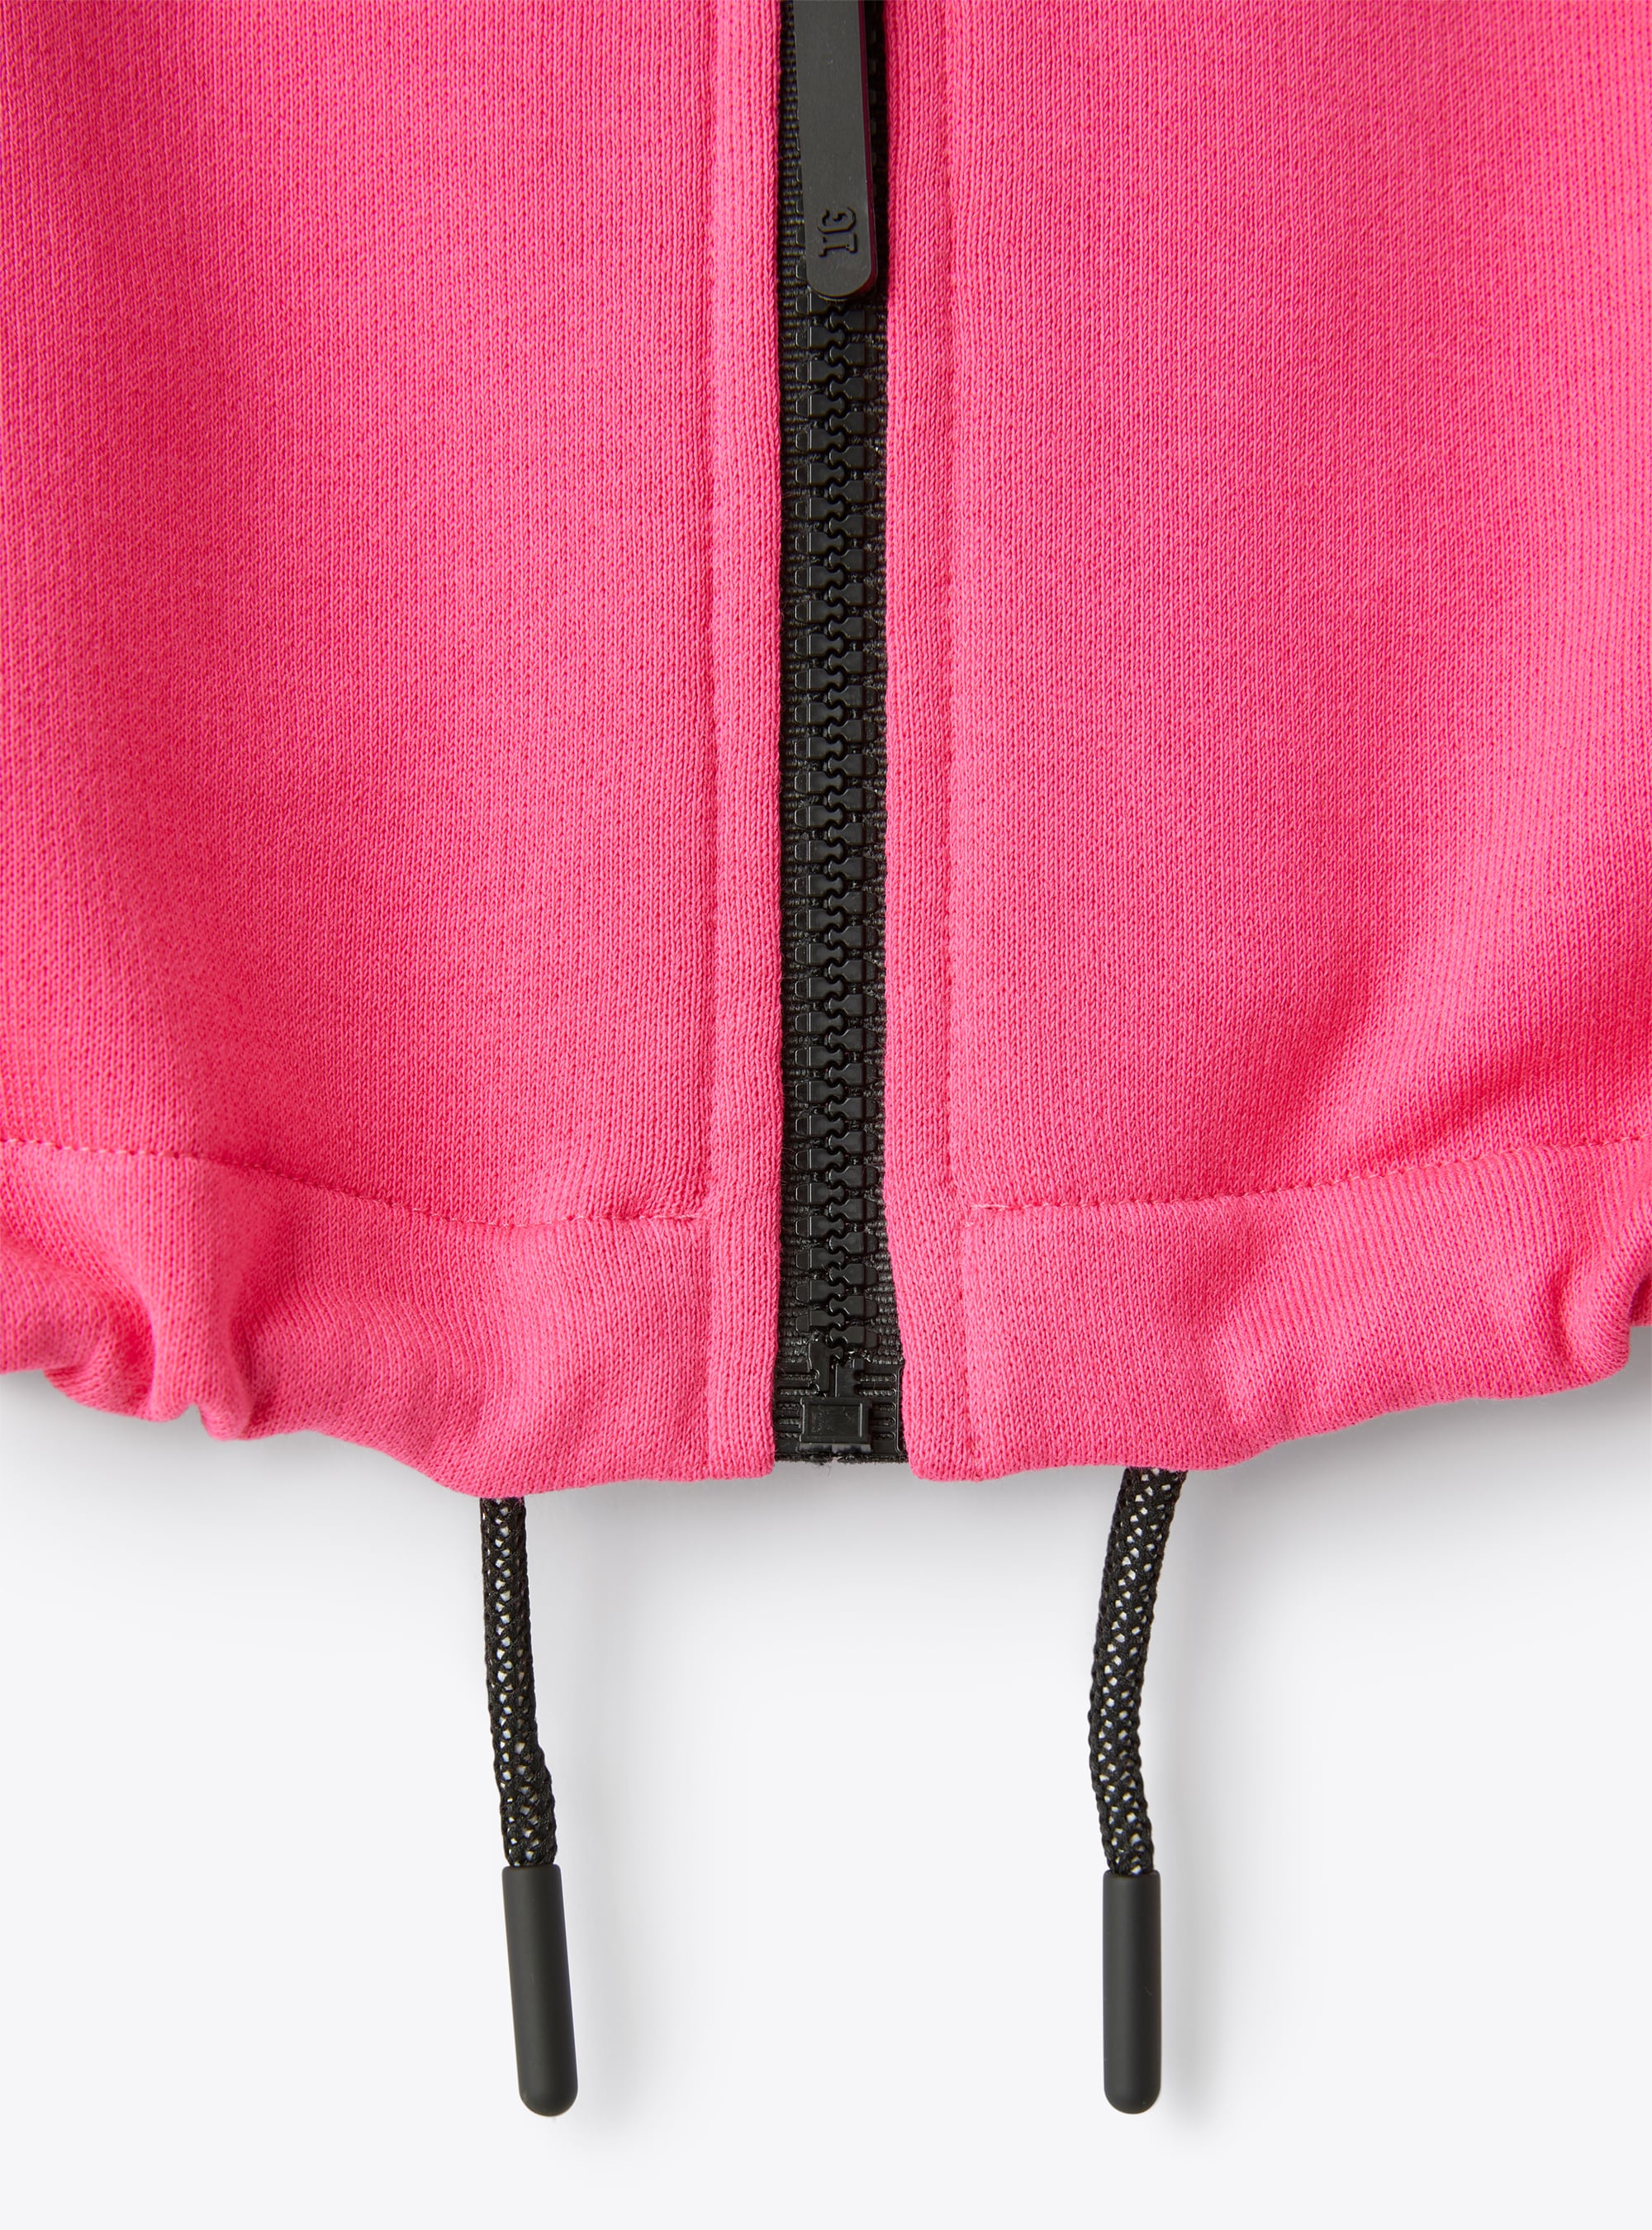 Pinkfarbene Sweatjacke mit durchgehendem Reißverschluss - Fuchsie | Il Gufo